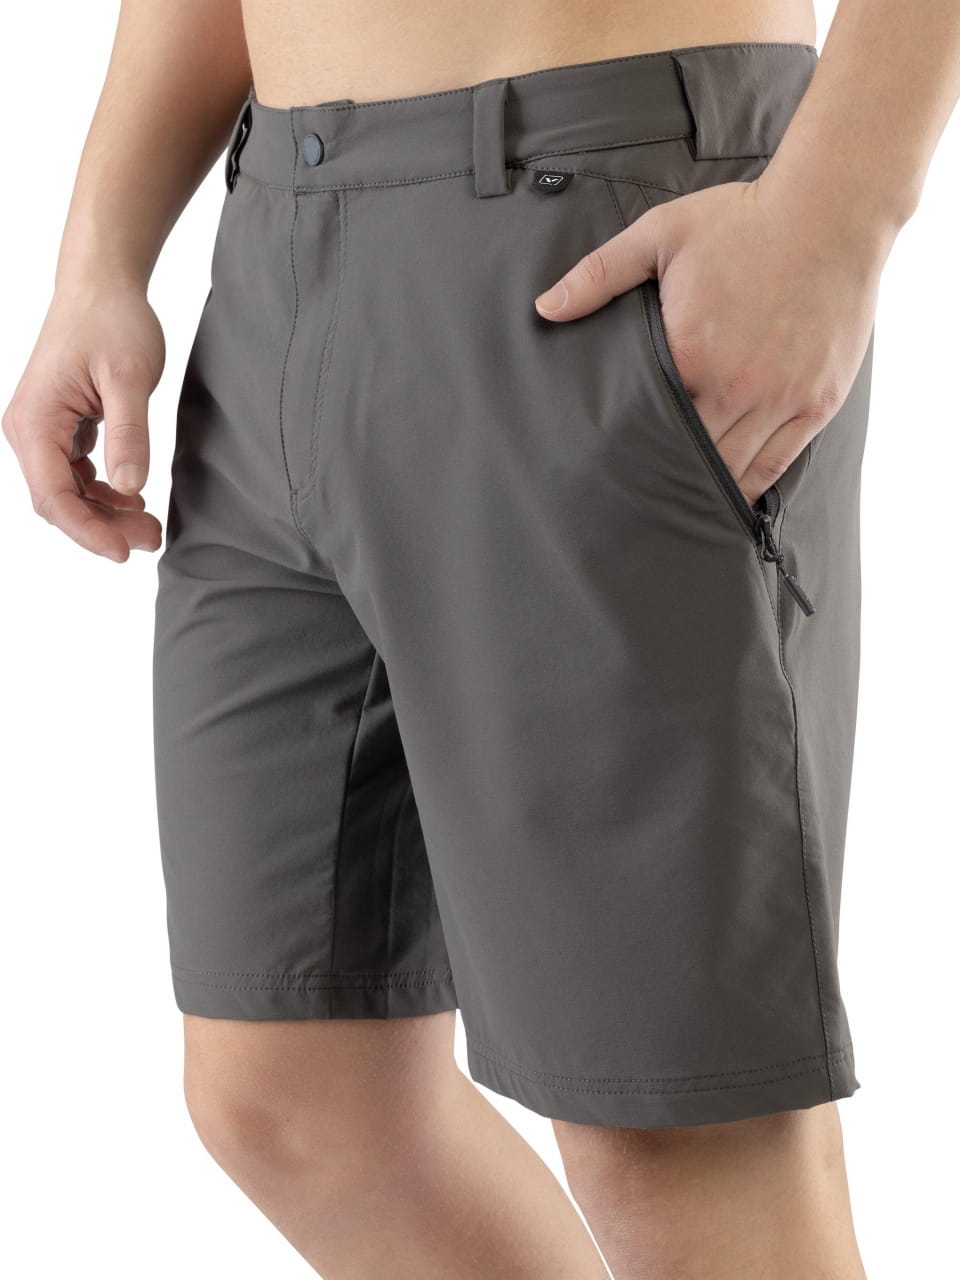 Pantalones cortos de hombre Viking Expander Shorts